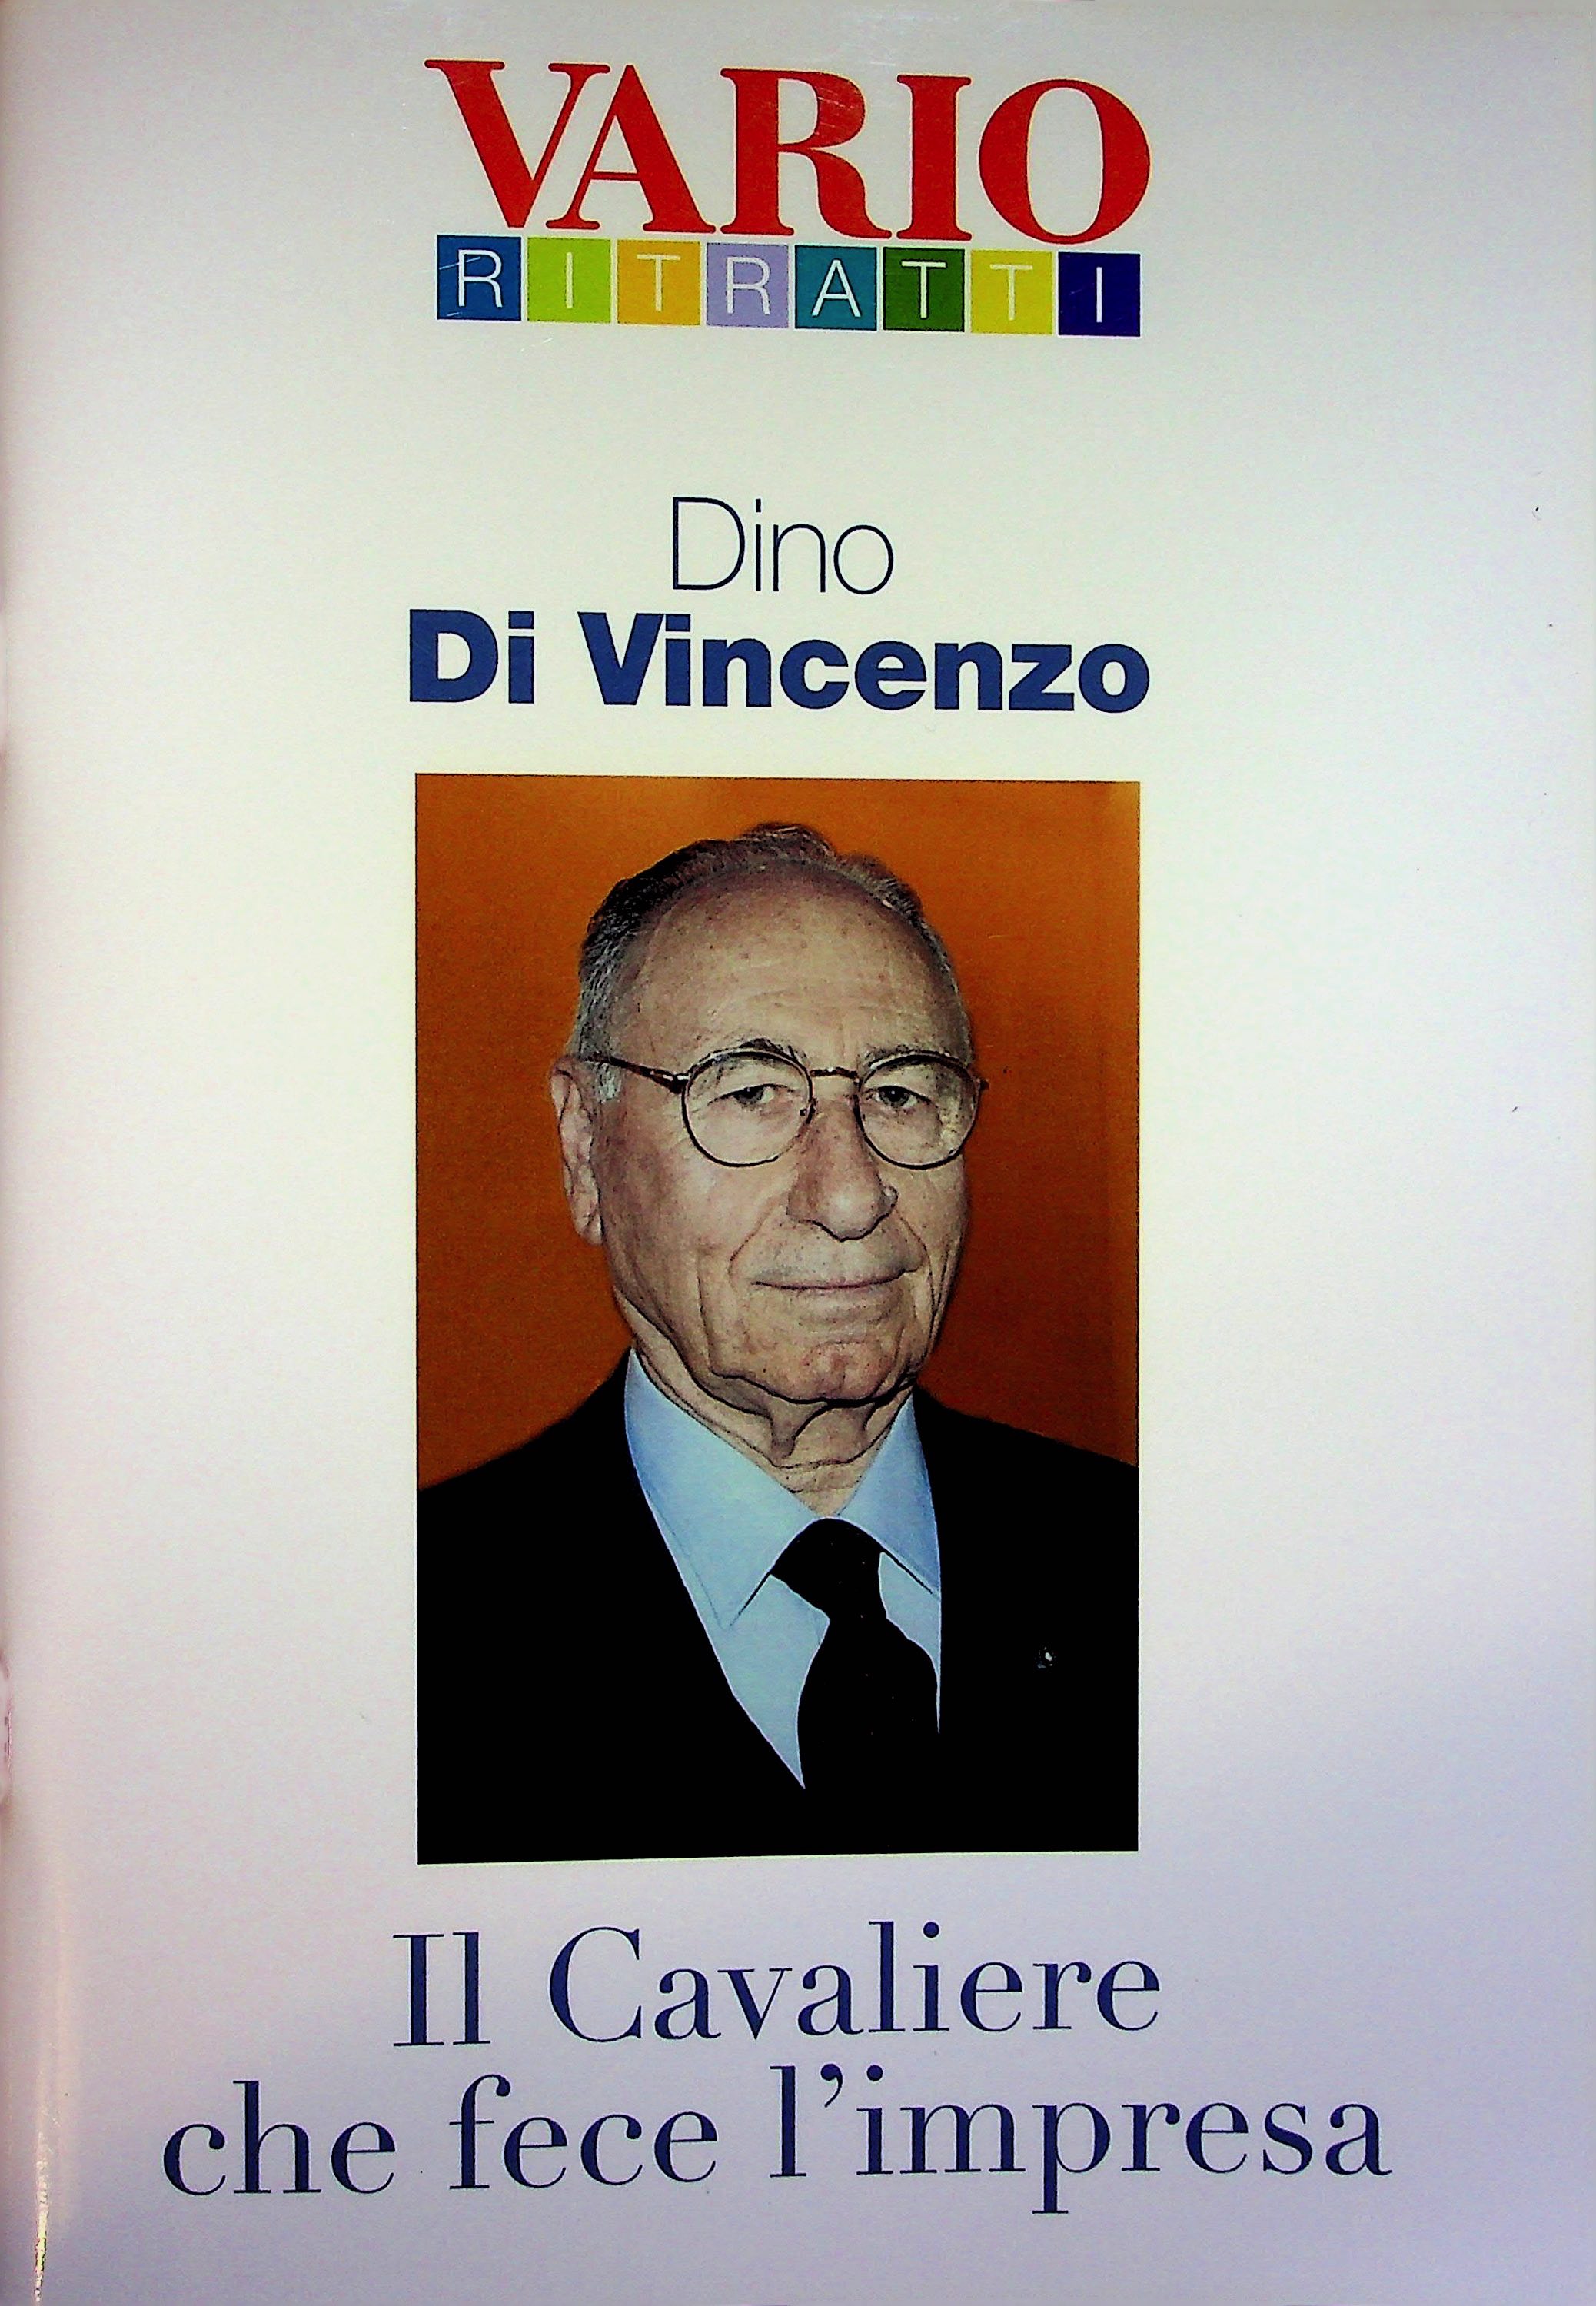 Vario Dino Di Vincenzo - Gruppo Magia